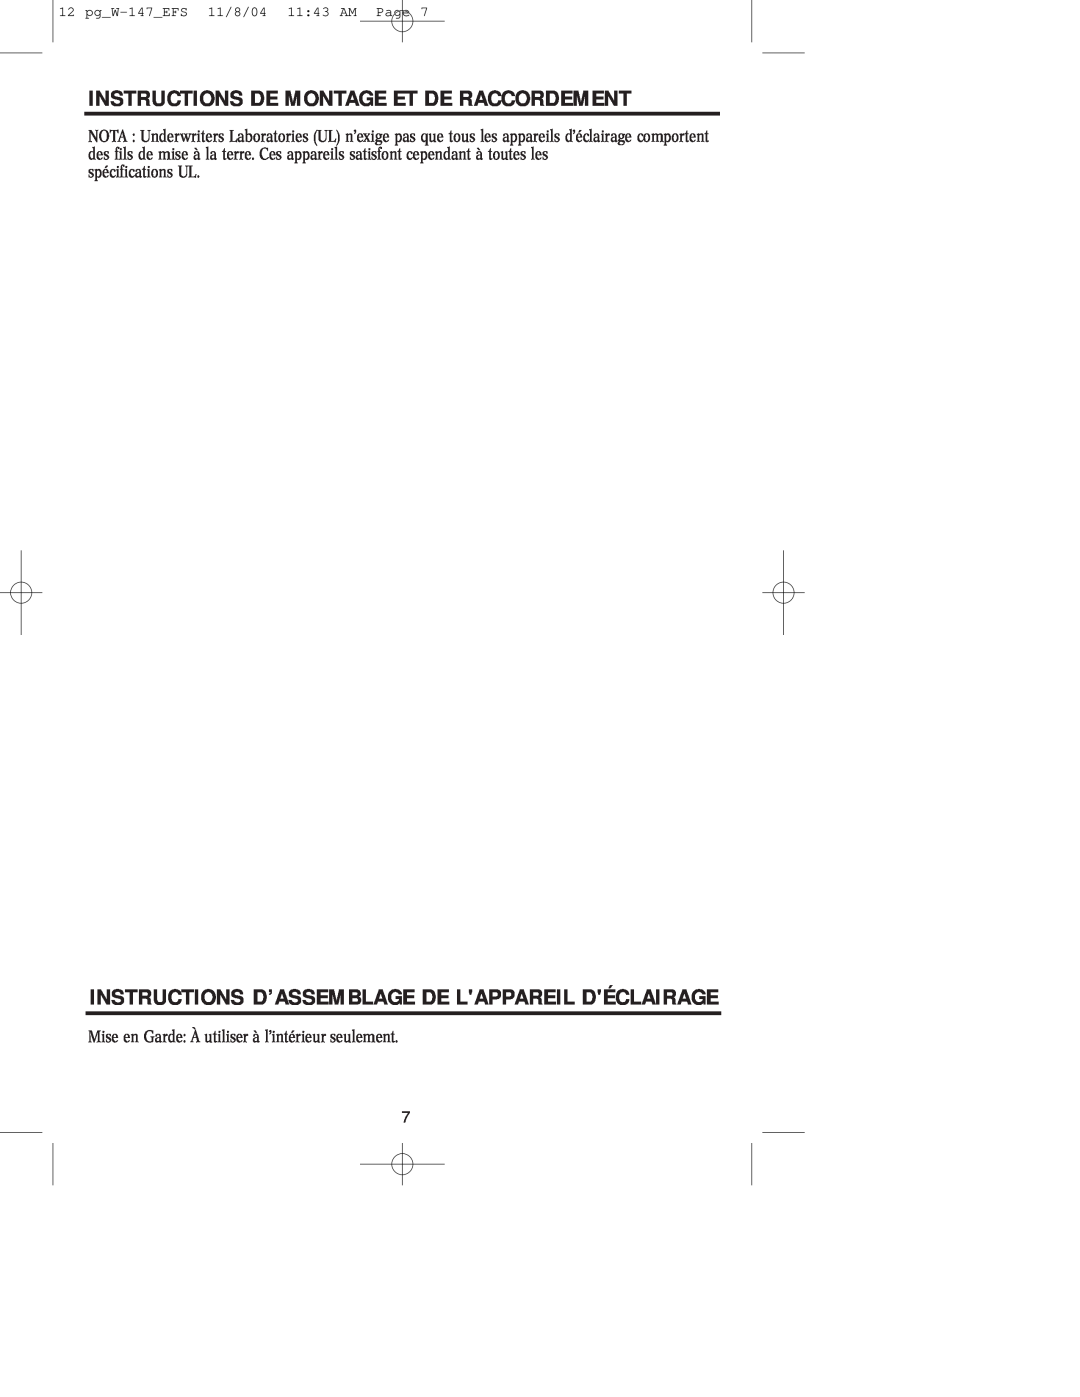 Westinghouse W-147 Instructions De Montage Et De Raccordement, Instructions D’Assemblage De Lappareil Déclairage 